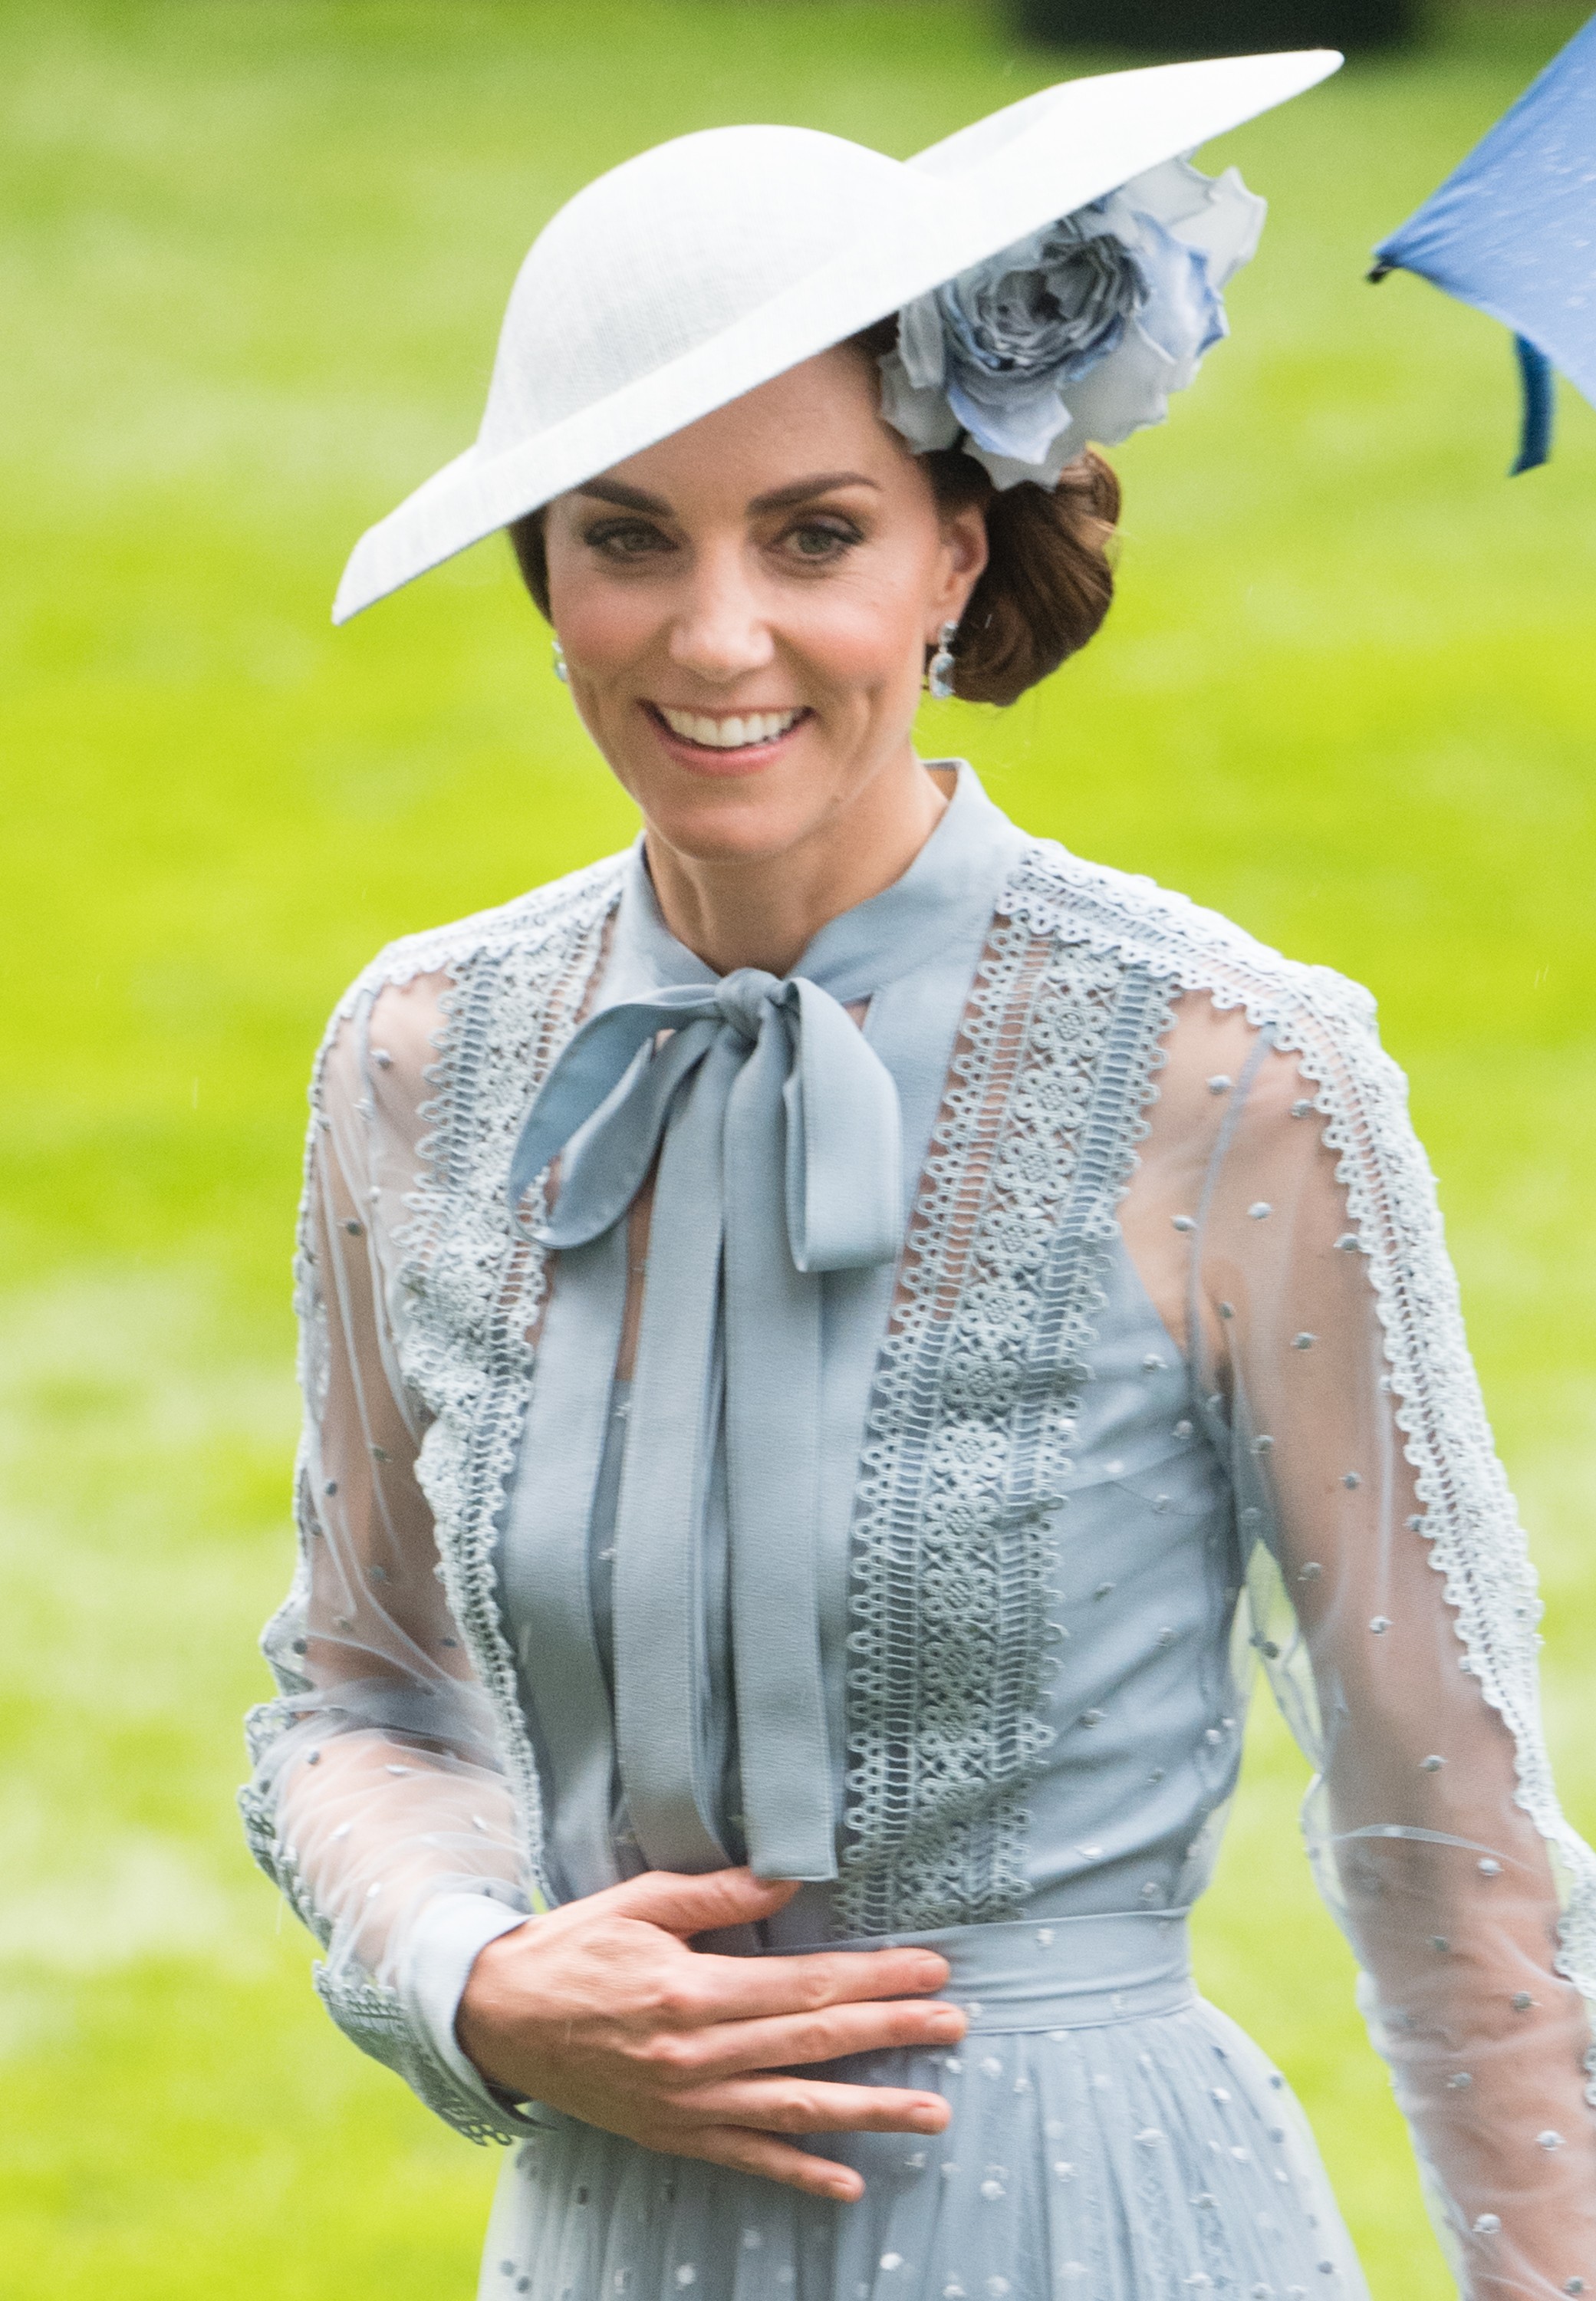 A duquesa Kate Middleton, esposa do Príncipe William, com a mão na barriga (Foto: Getty Images)